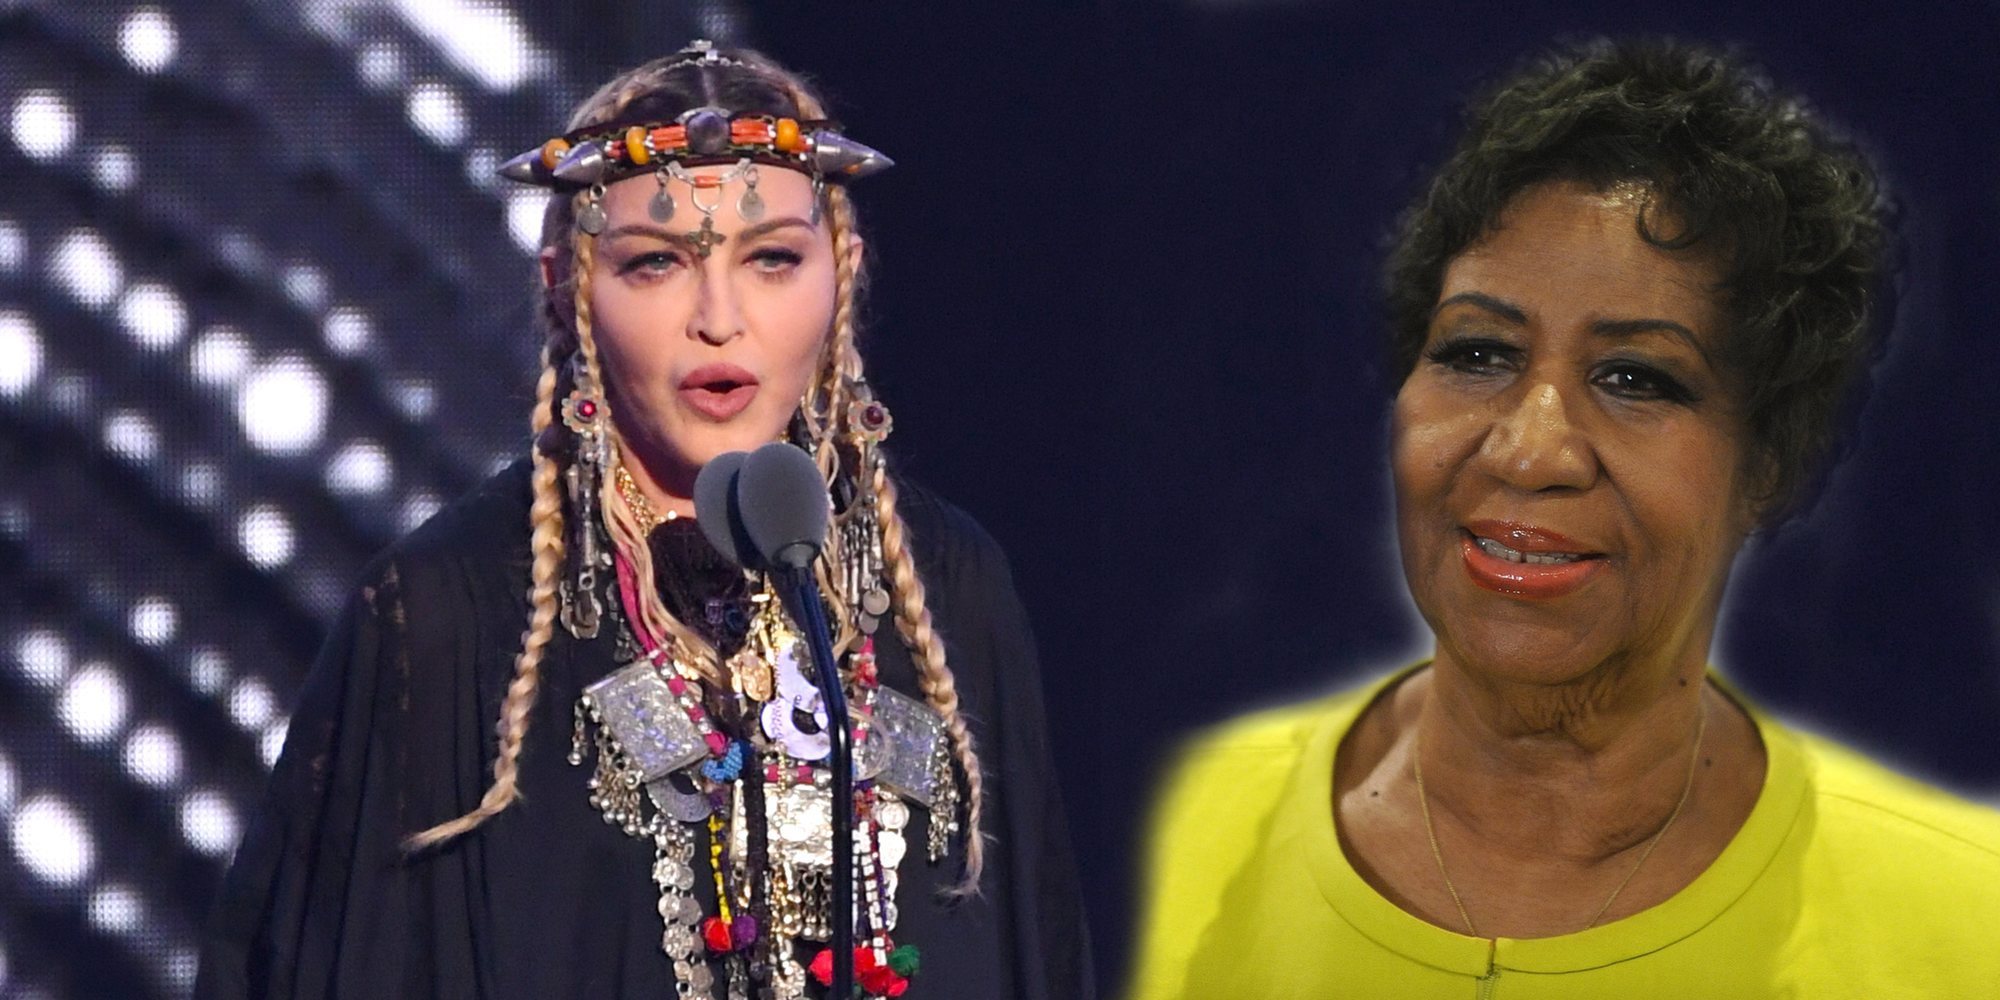 El fallido tributo a Aretha Franklin que realizó Madonna durante la gala de los Video Music Awards 2018